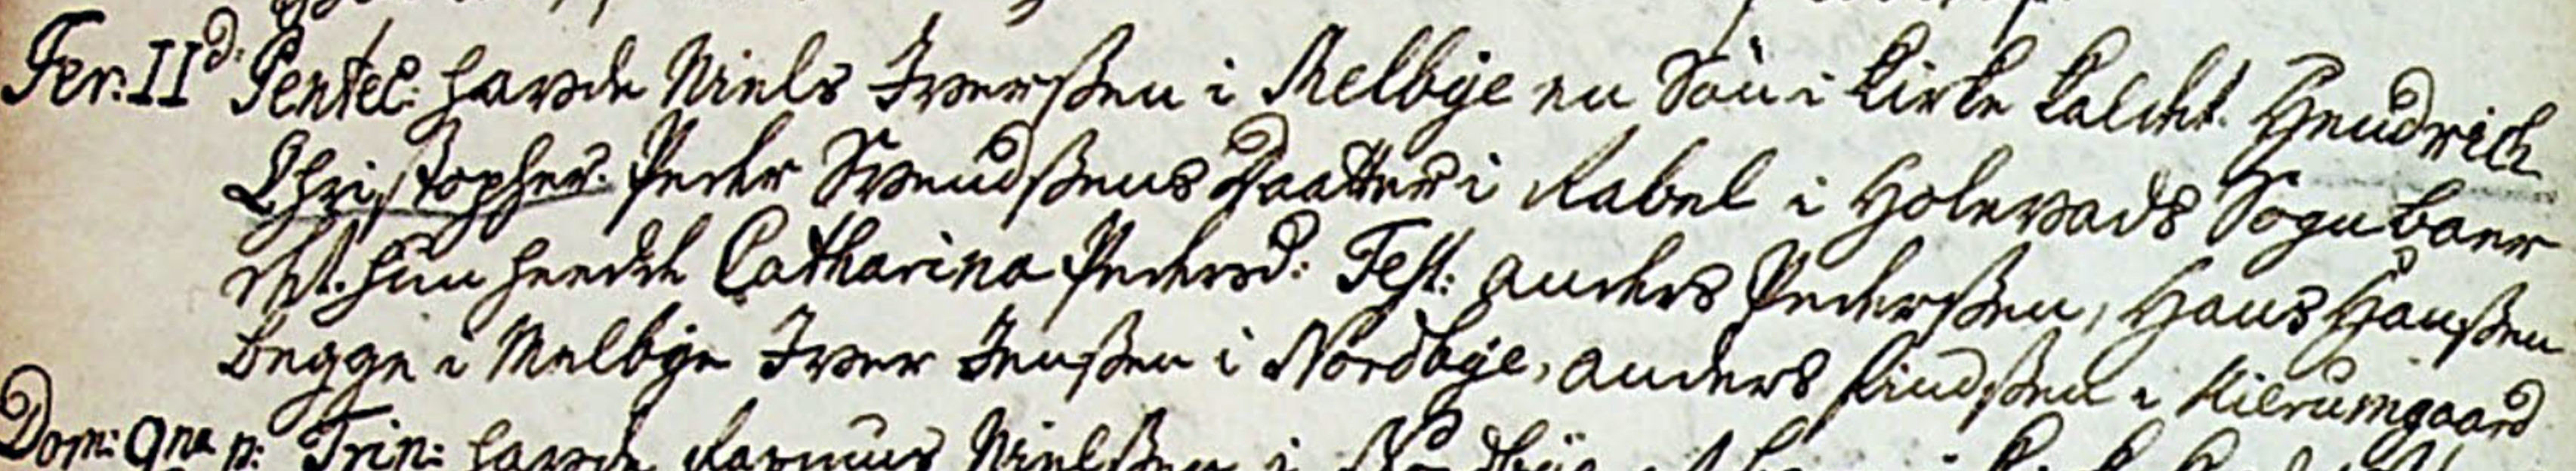 Henrik Christoffer Nielsens daab i Kærum sogn 1750